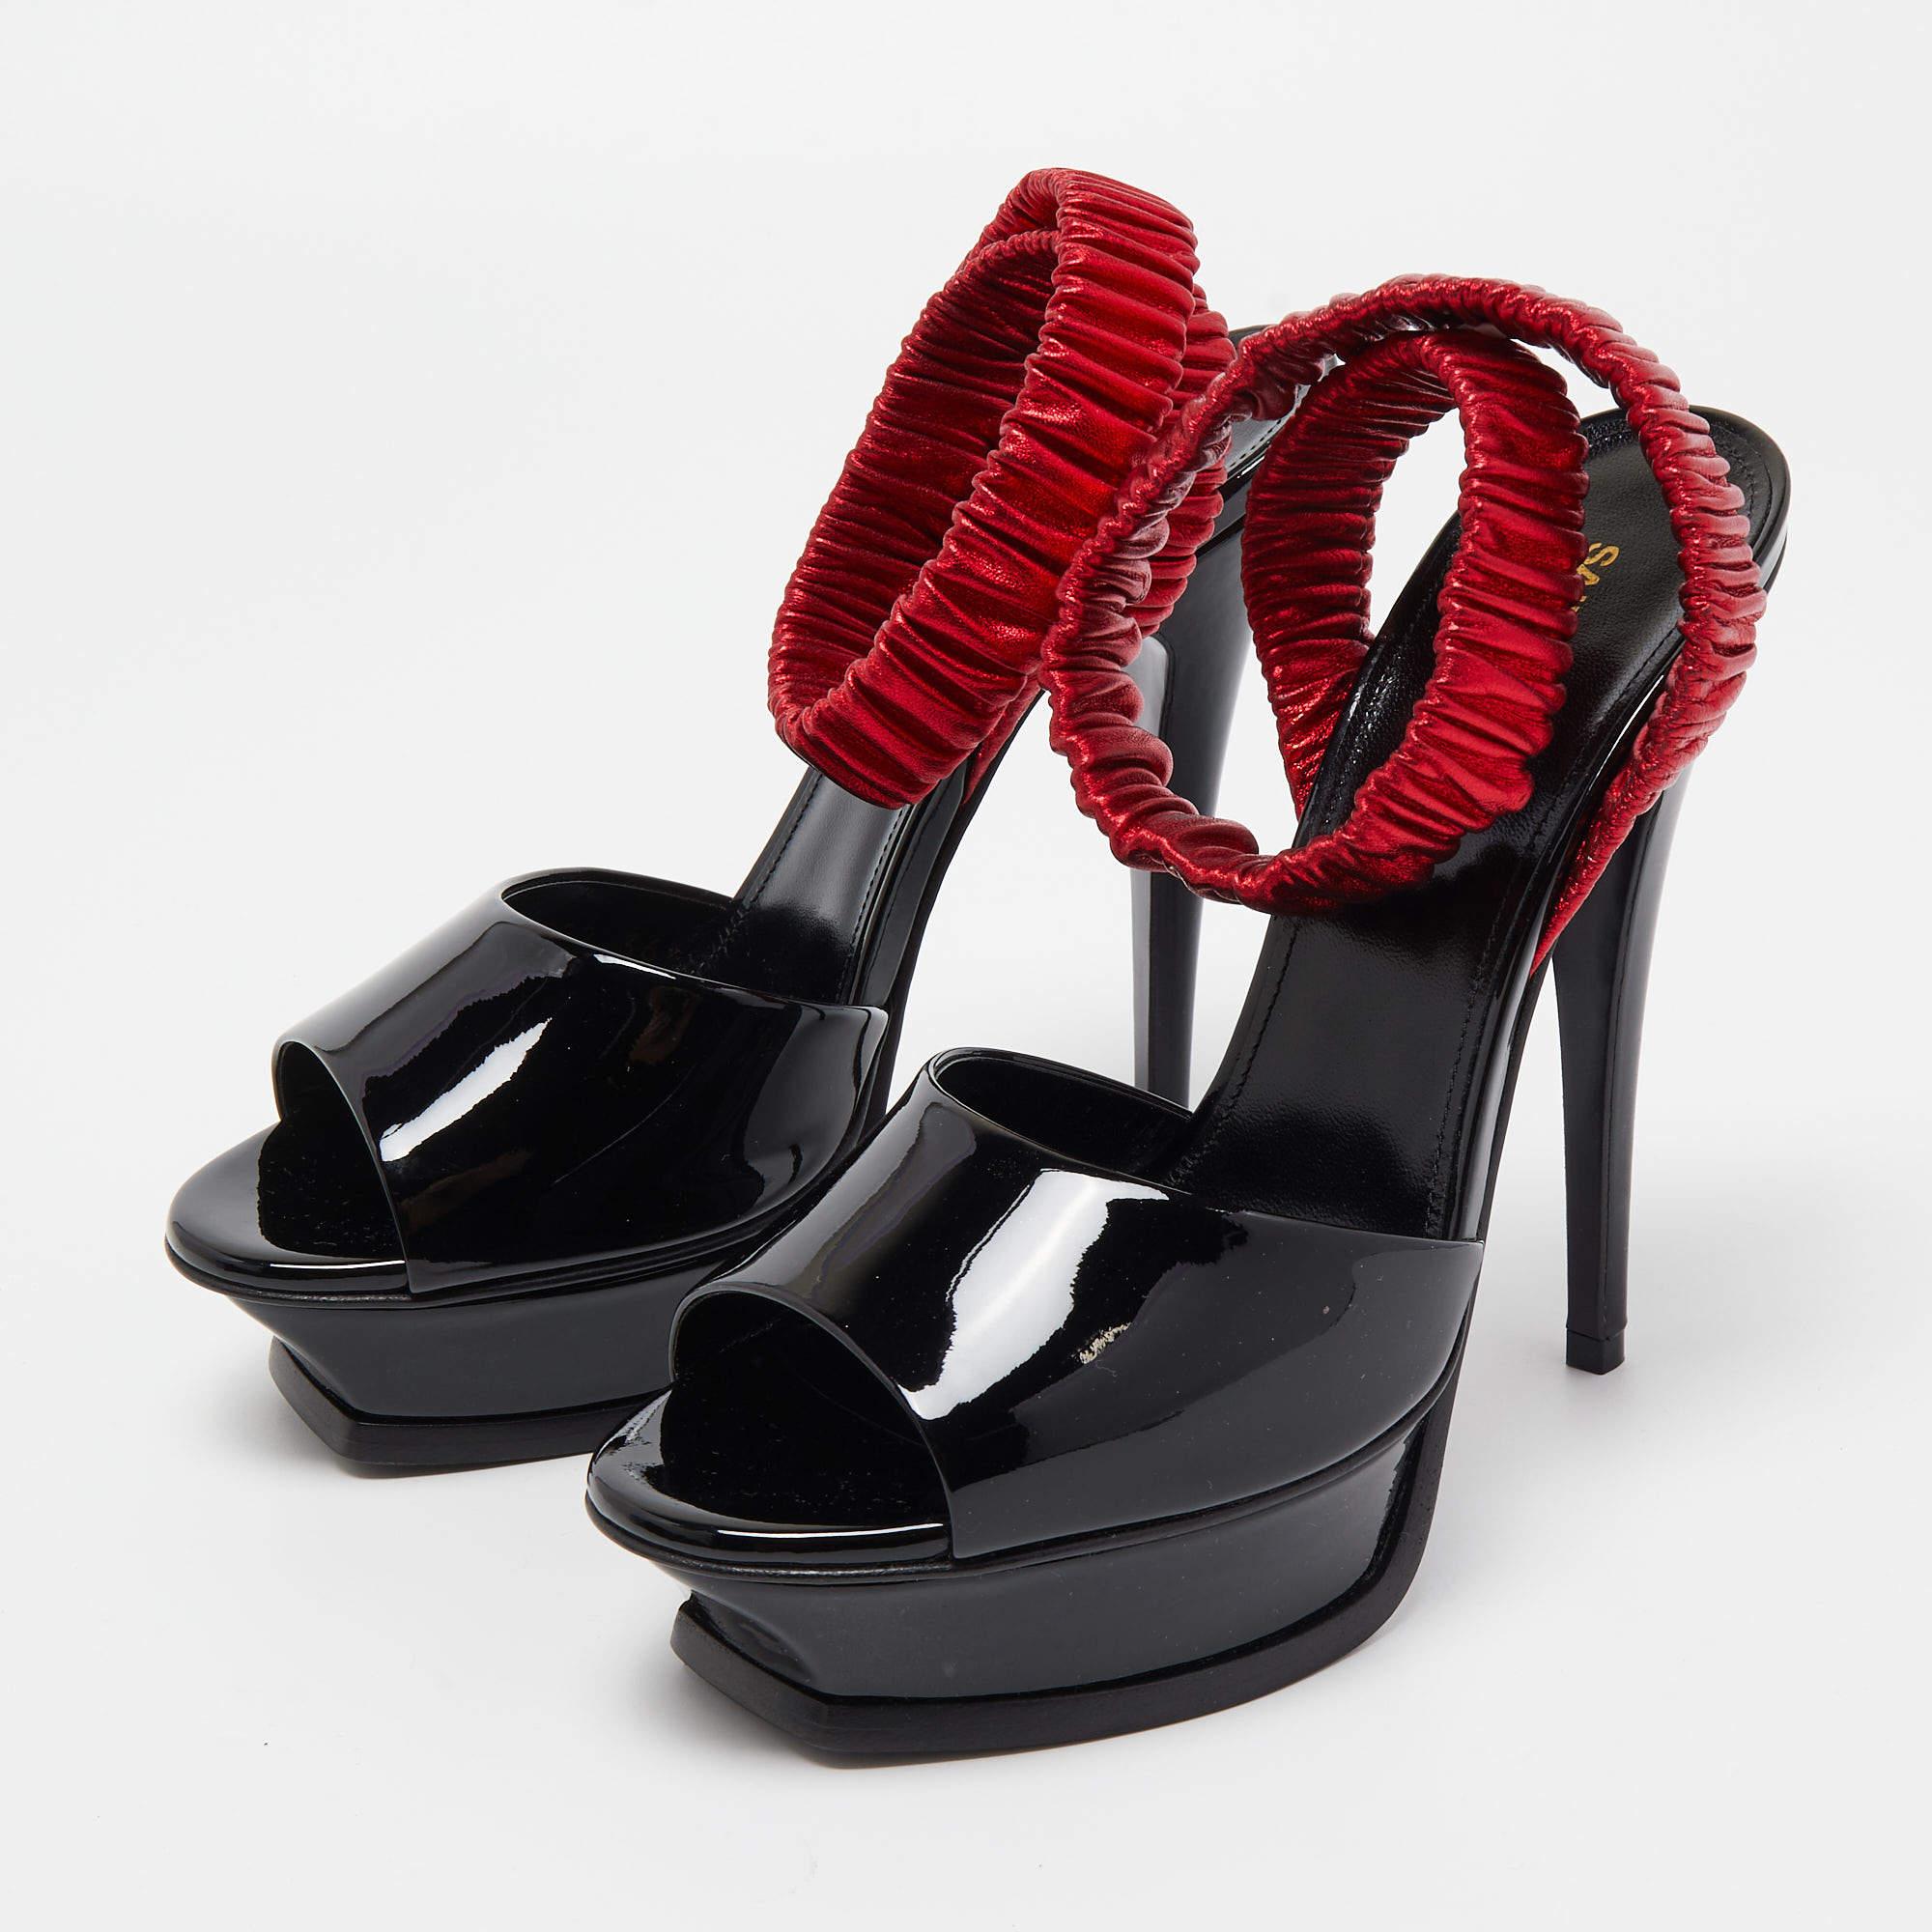 Saint Laurent Black Patent Leather Platform Ankle Wrap Sandals Size 36.5 1